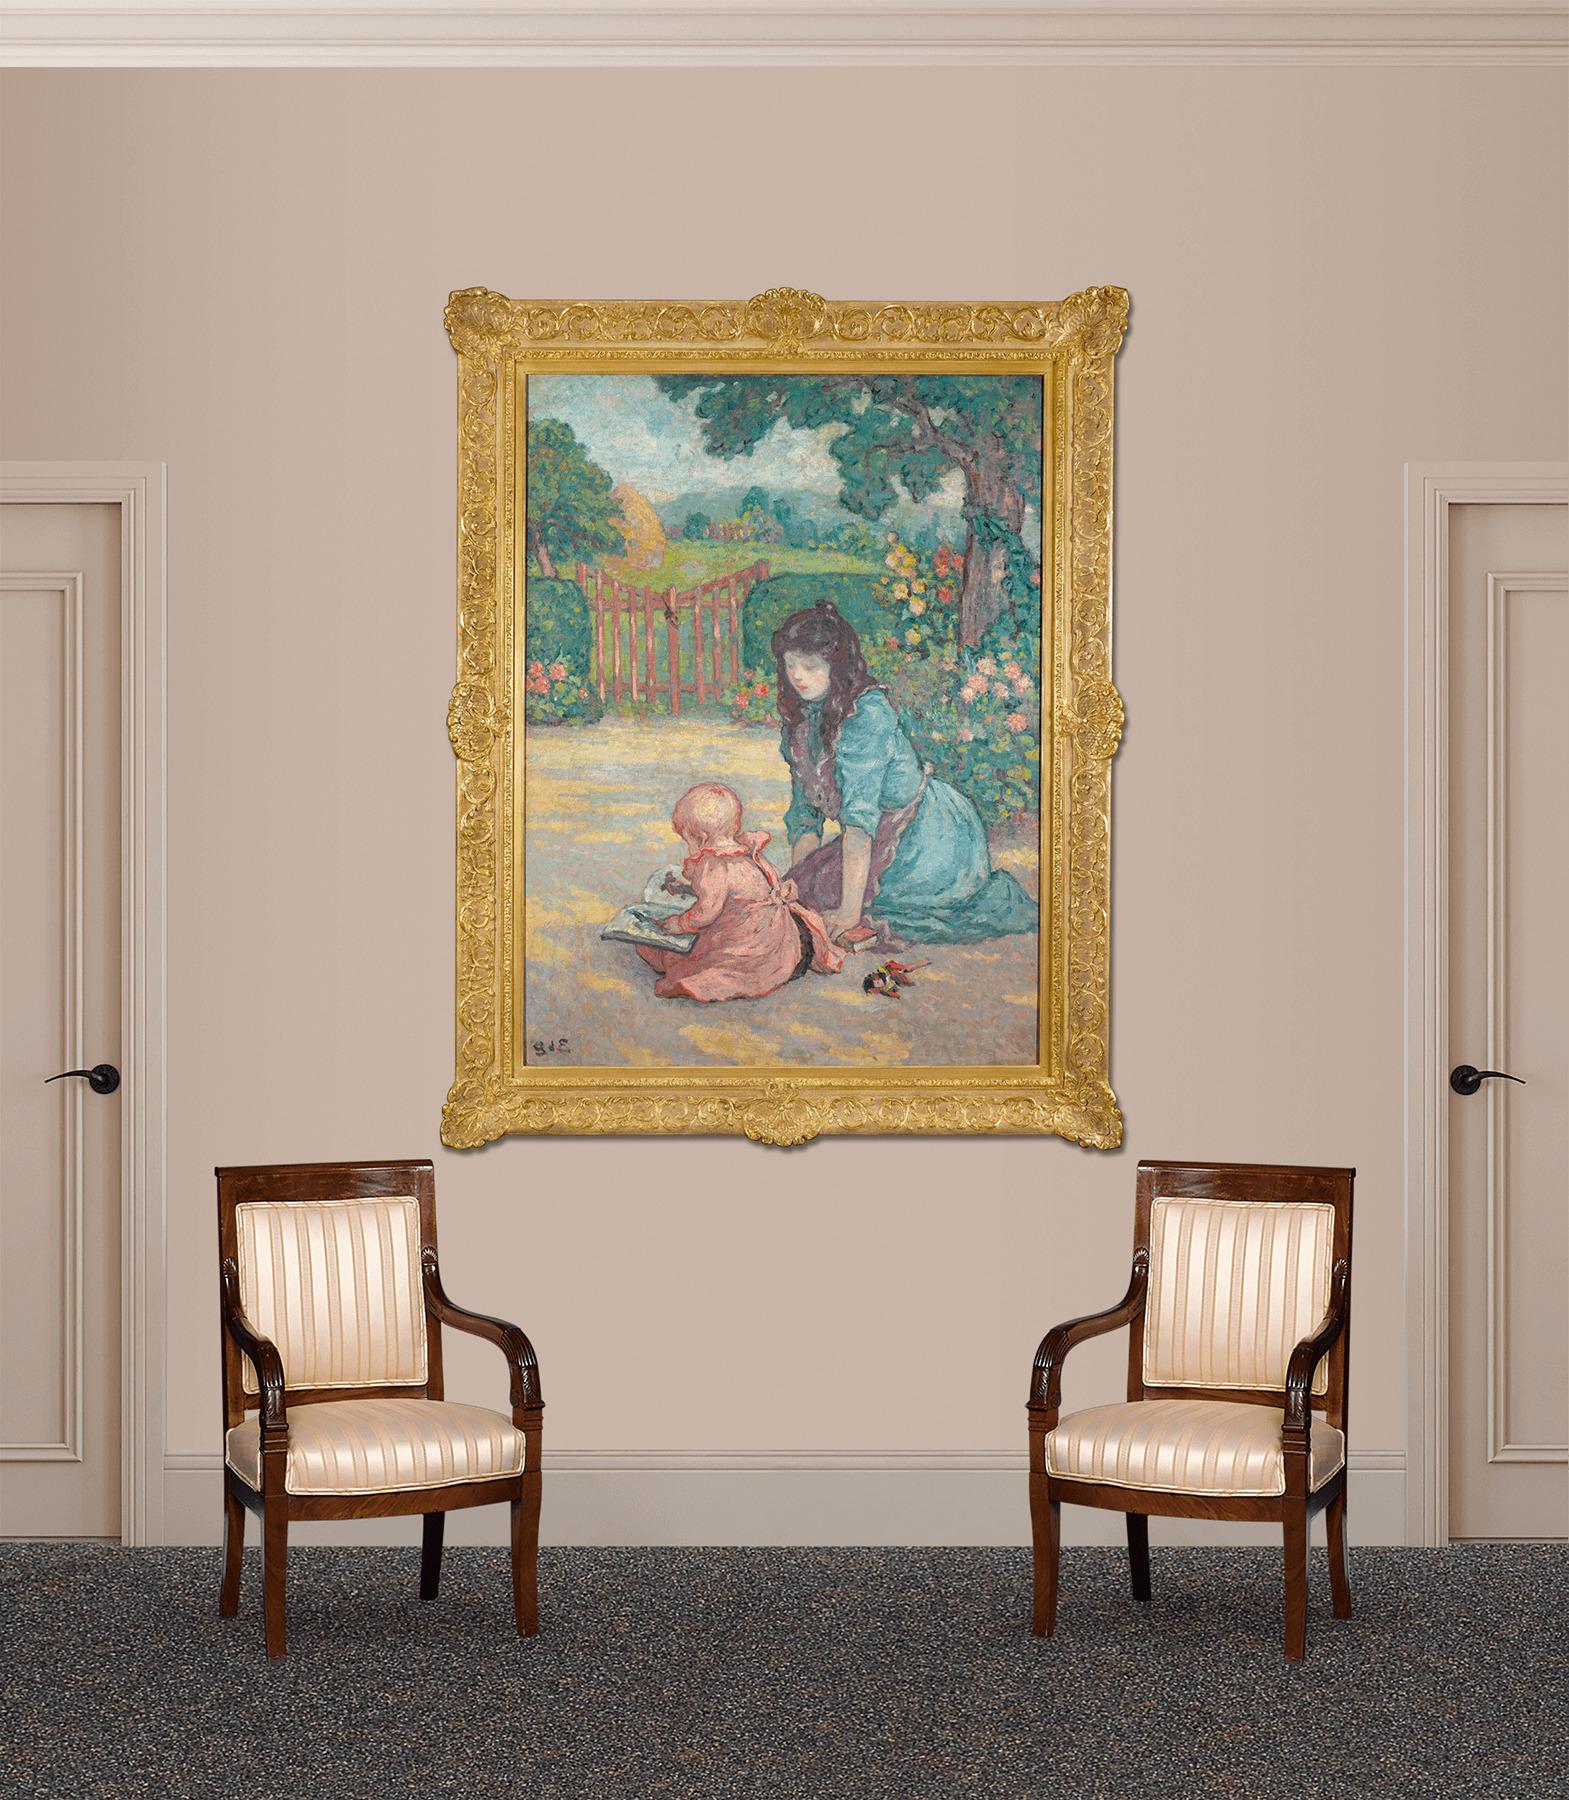 Der französische postimpressionistische Maler Georges d'Espagnat fängt in diesem lebhaften Ölgemälde einen bezaubernden Moment zwischen einer Mutter und ihrem Kind ein. Das Gemälde, das mit einer studierten Verwendung von Komplementärfarben und